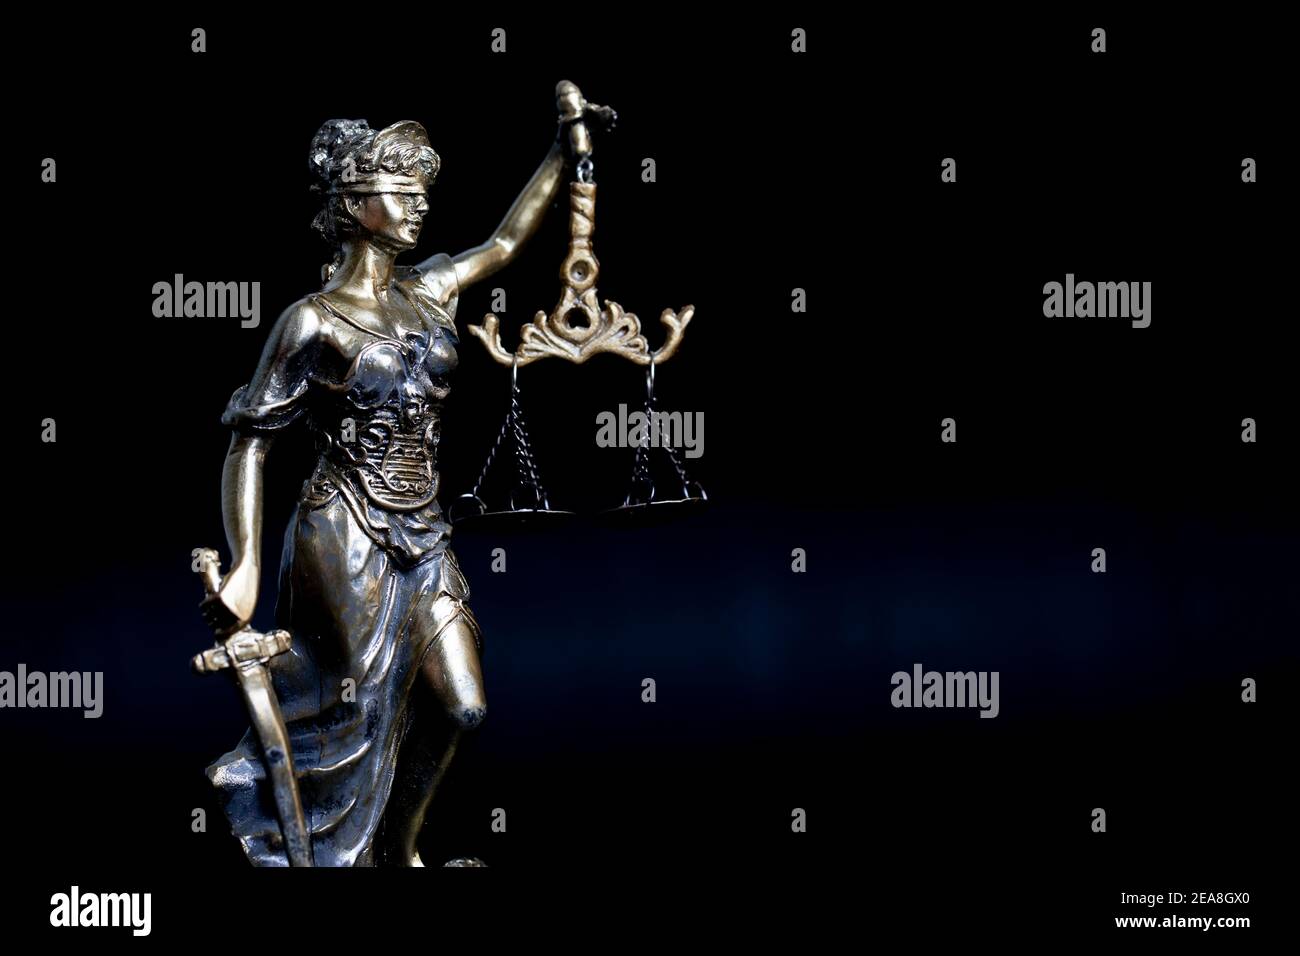 Statue de Lady Justice avec balance. Concept de justice Banque D'Images